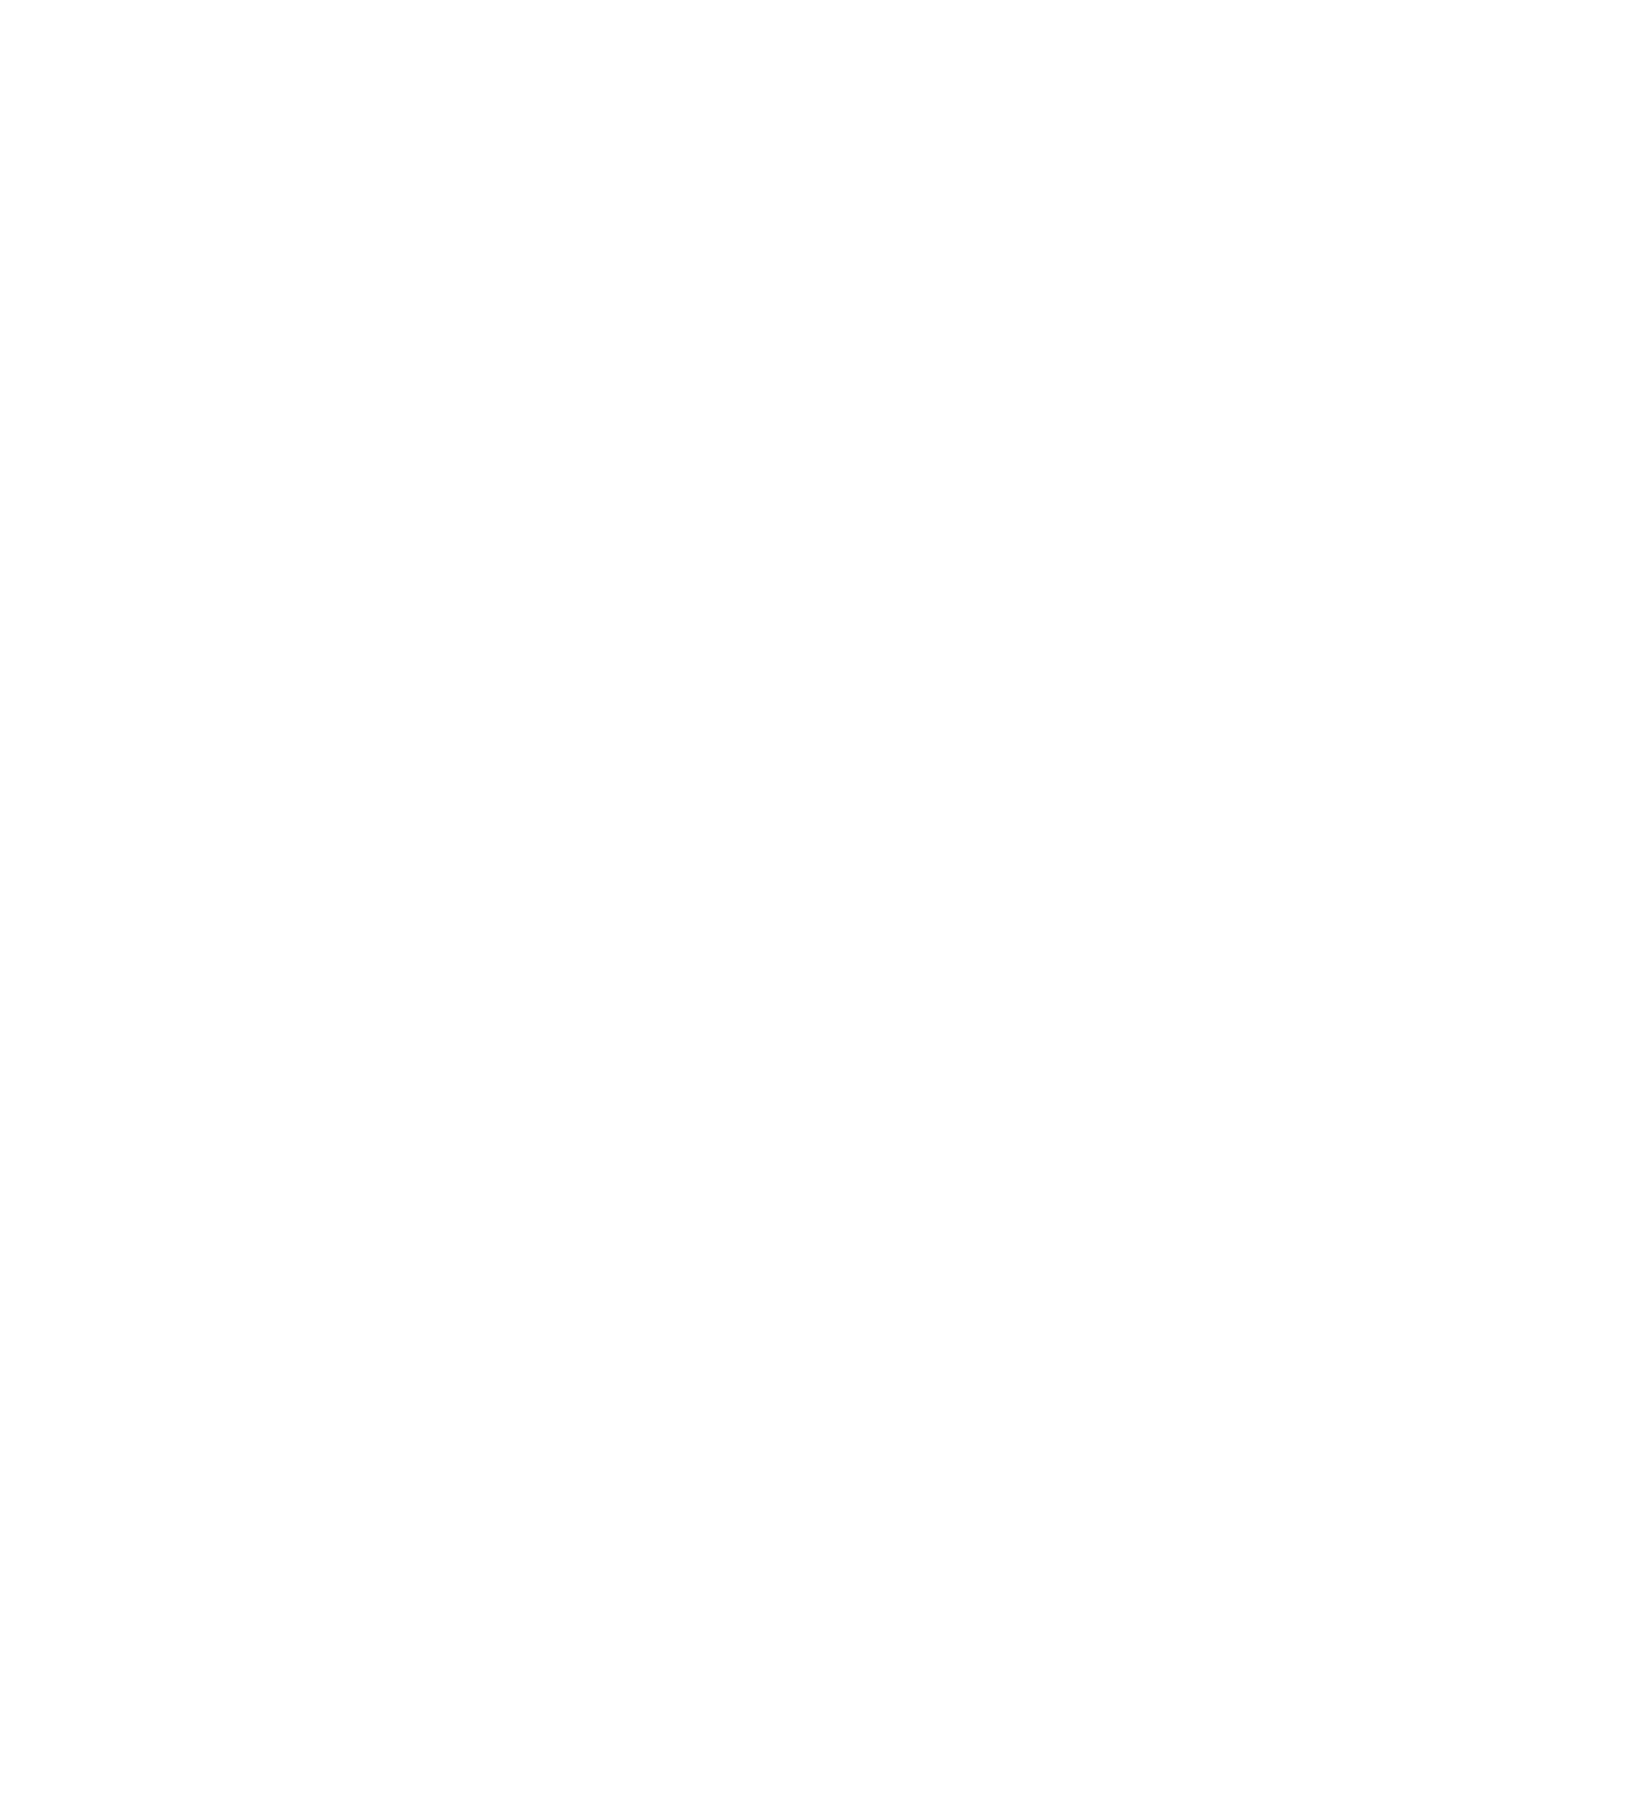 miSecureMessages